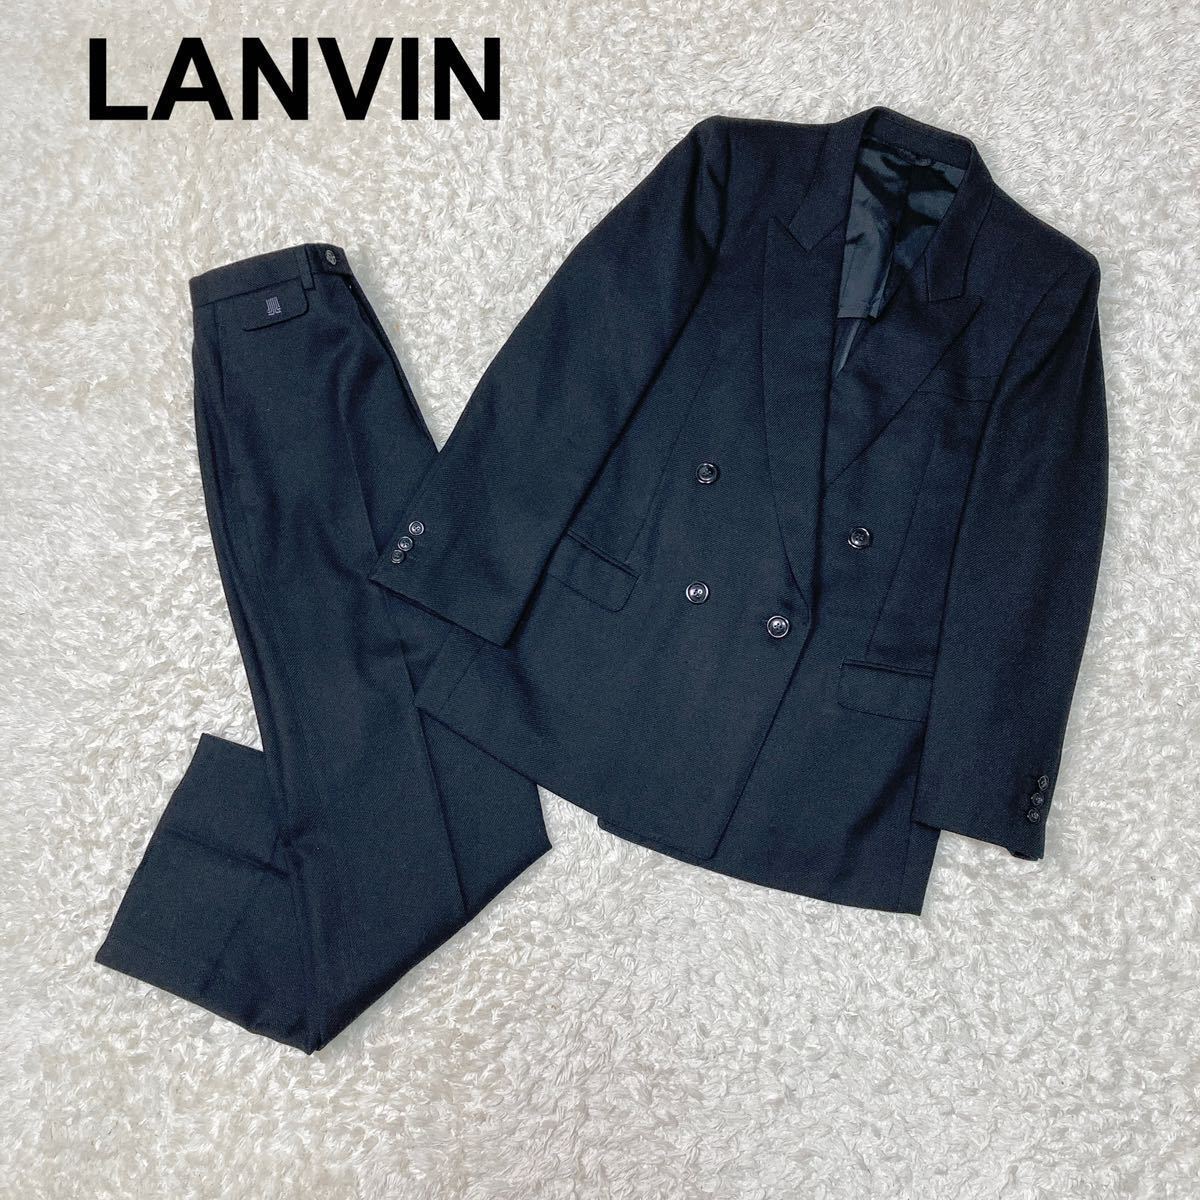 LANVIN ランバン スーツ セットアップ H50-26 ダブル ブラック ウール ジャケット パンツ メンズ B122326-72